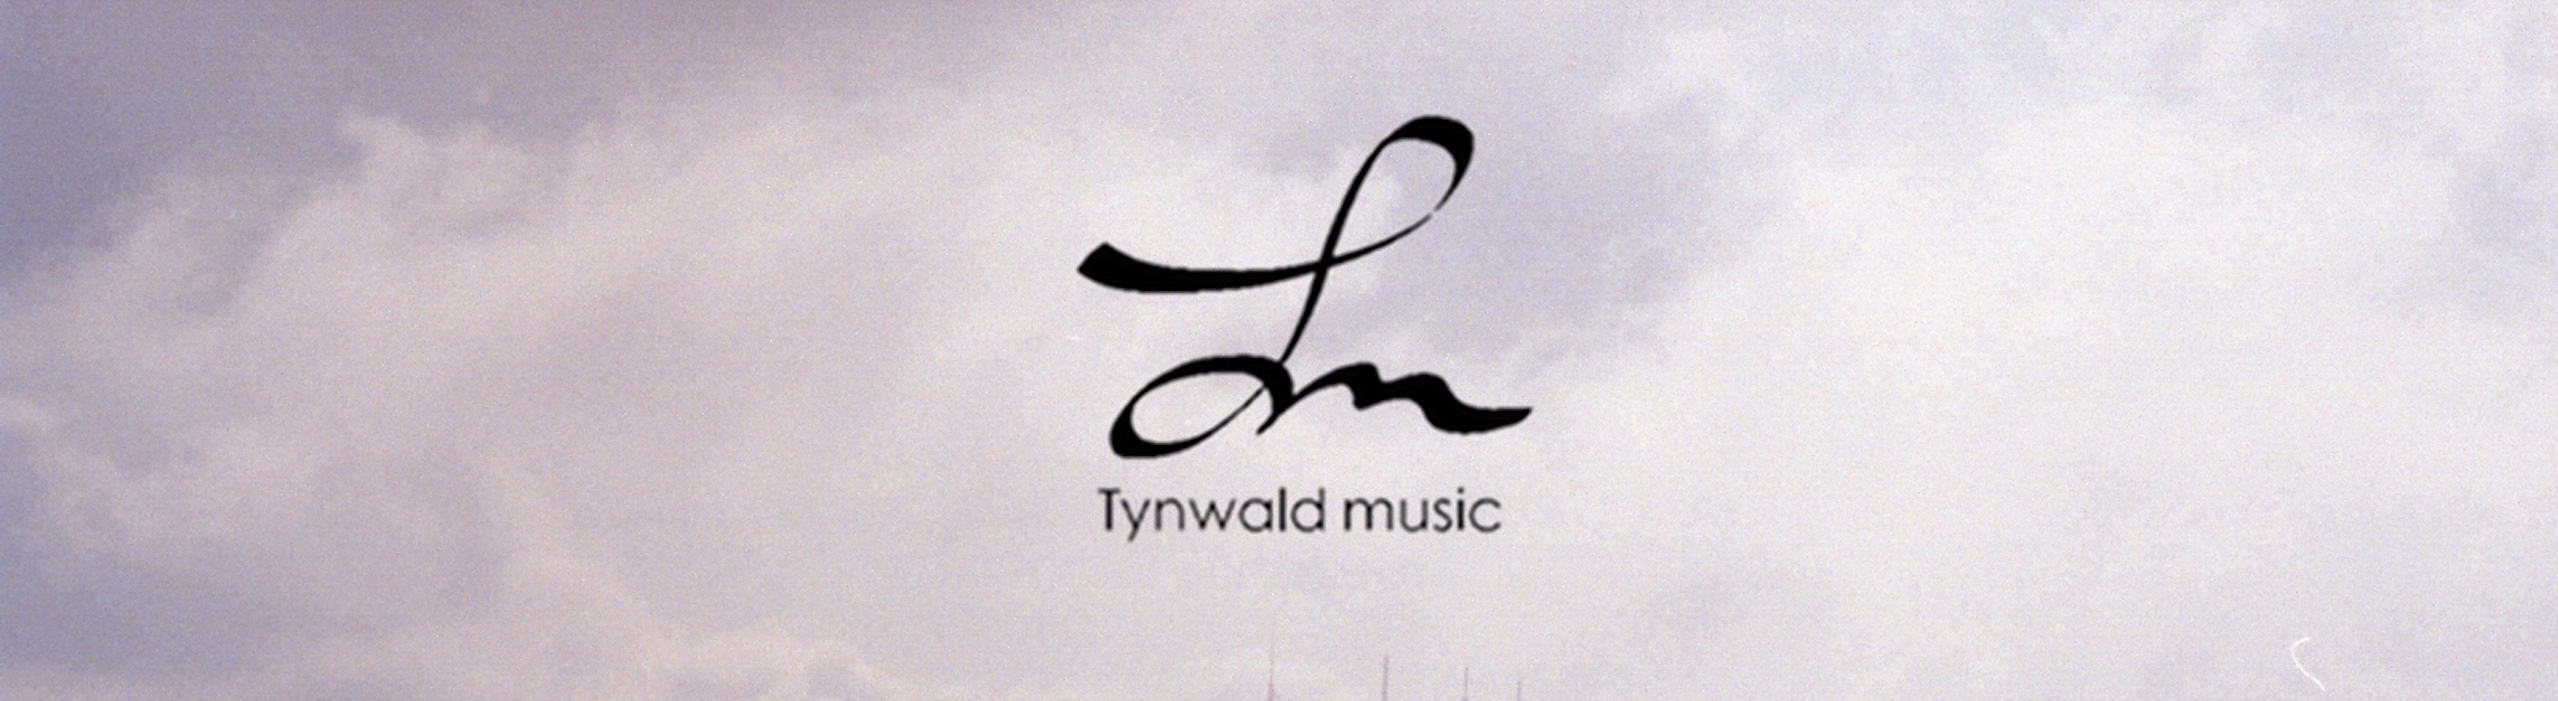 Tynwald music